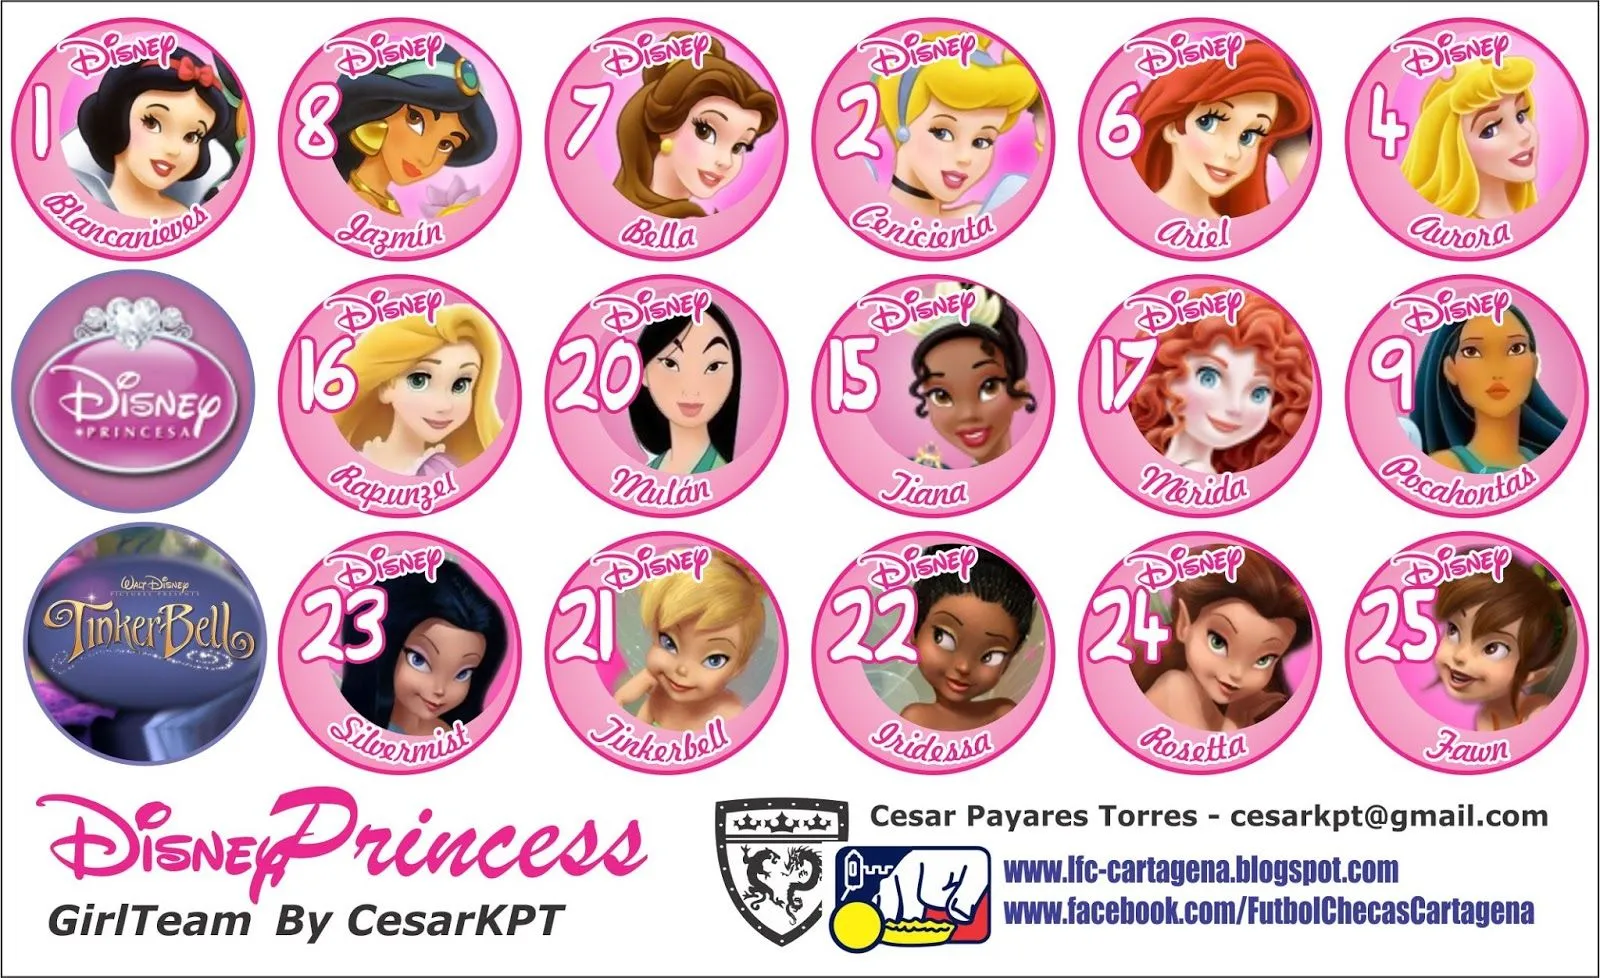 Fotos y nombres de las princesas de Disney - Imagui